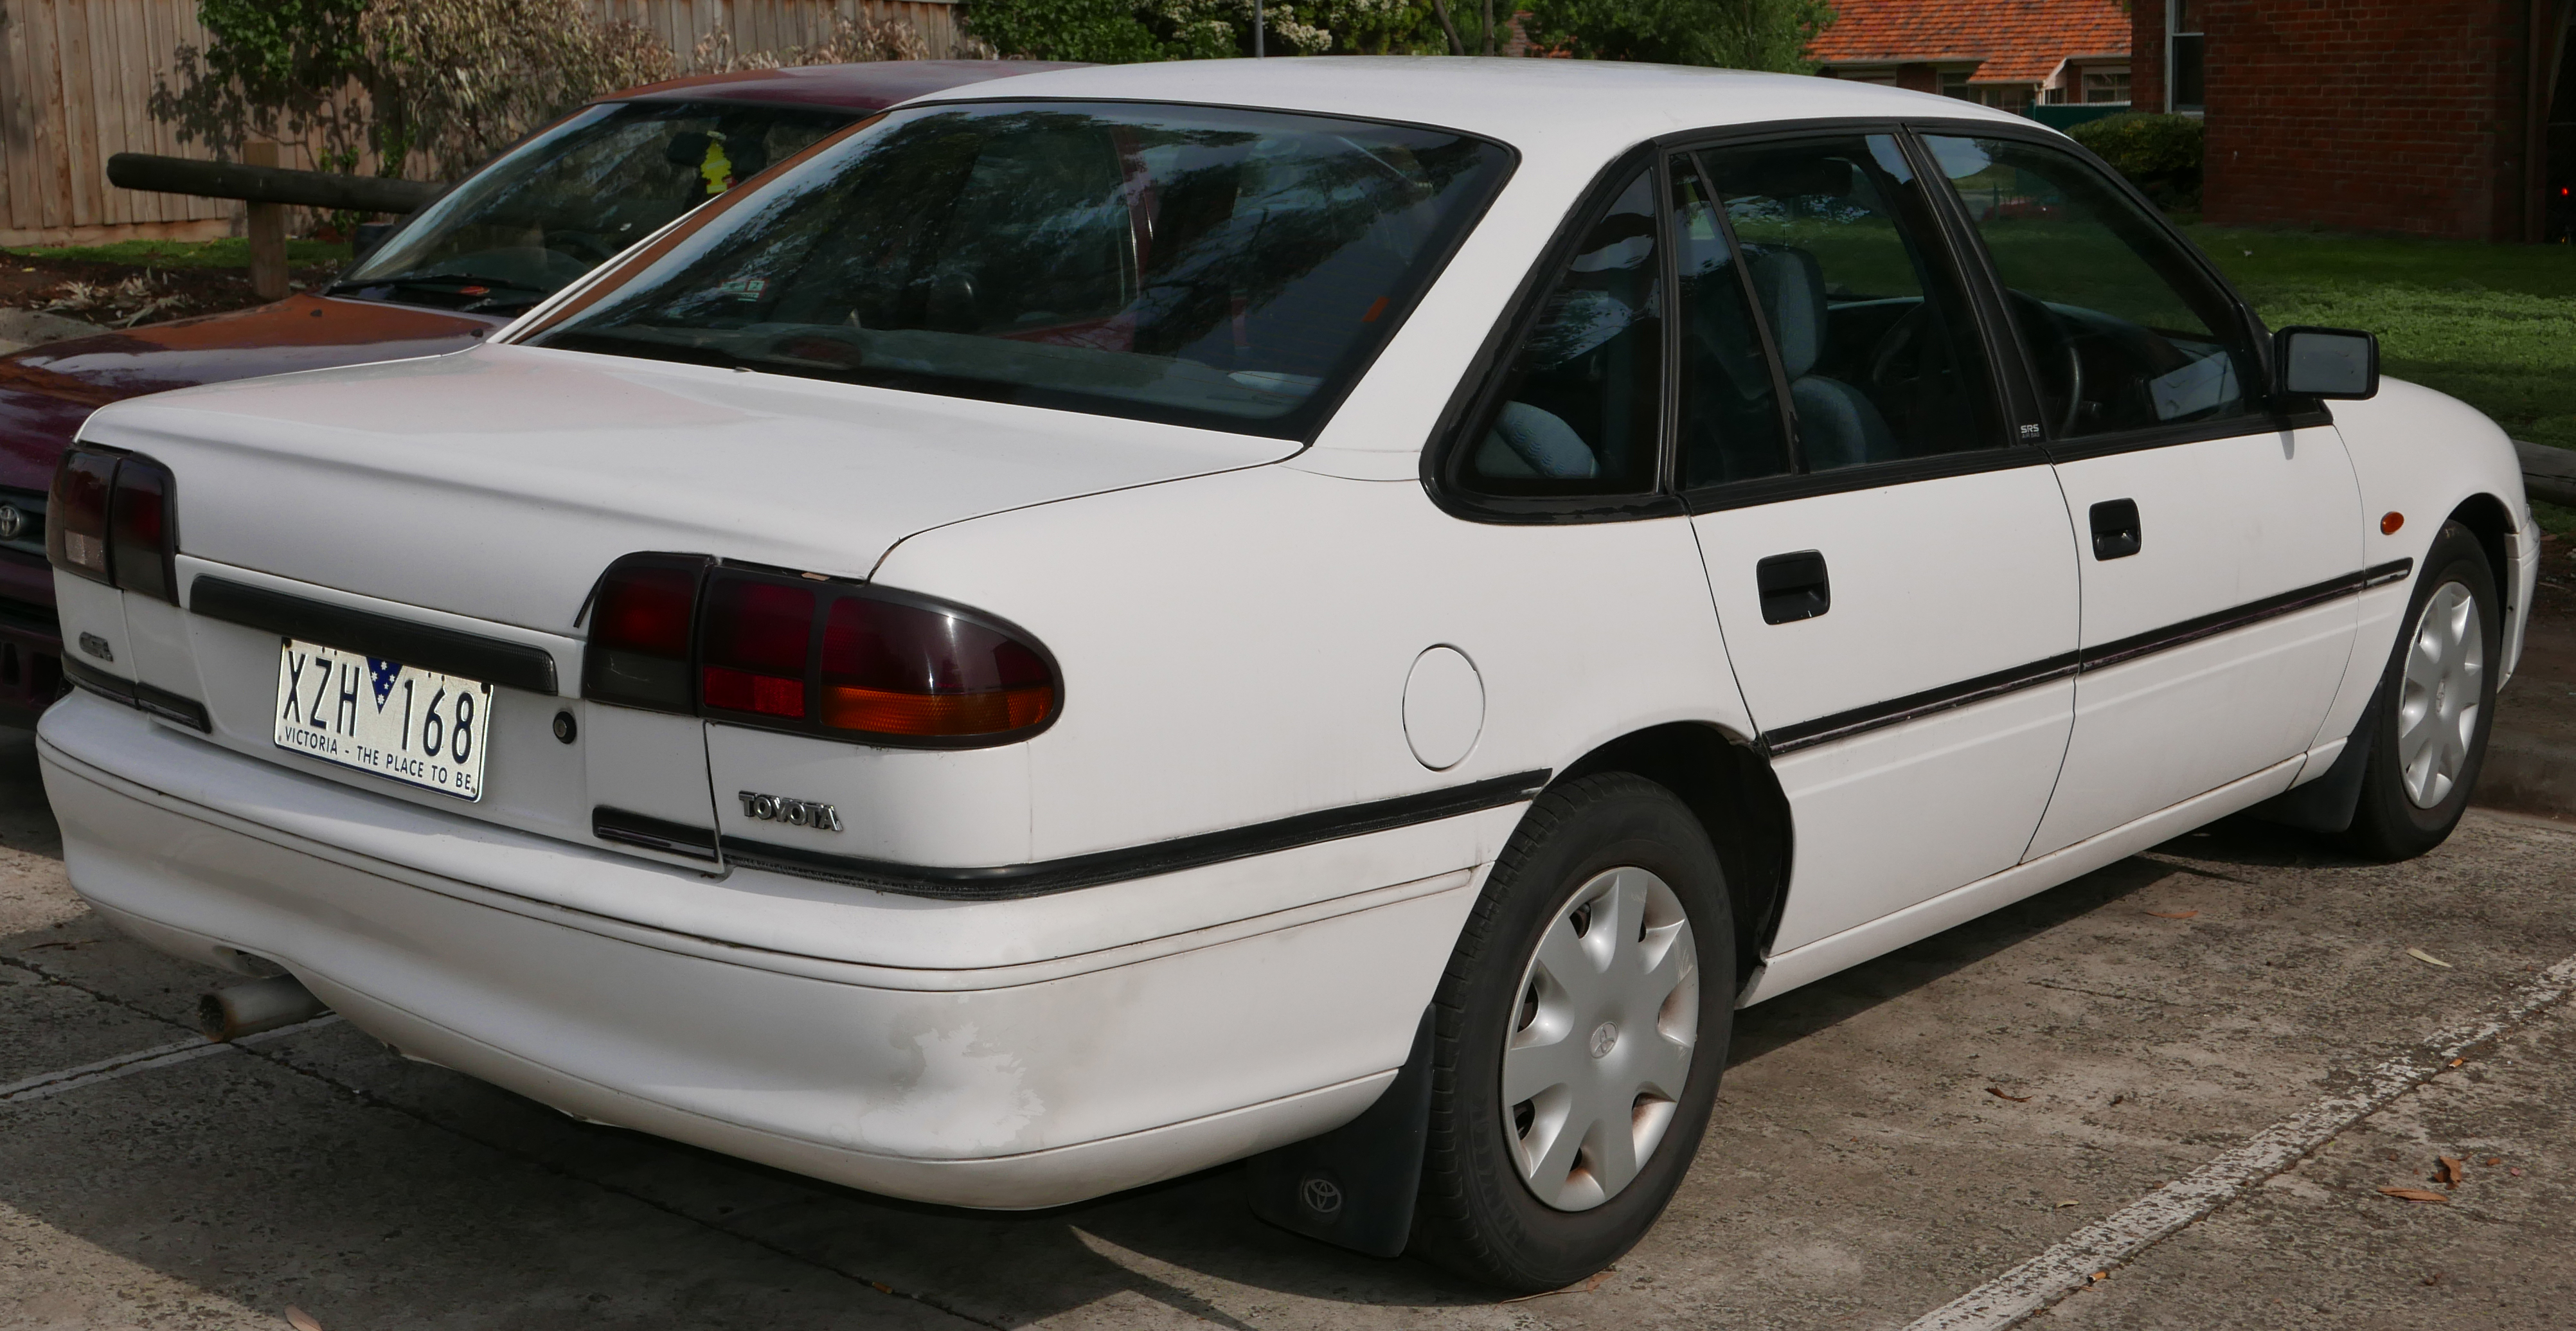 1997_Toyota_Lexcen_(T5)_CSi_sedan_(2015-11-11)